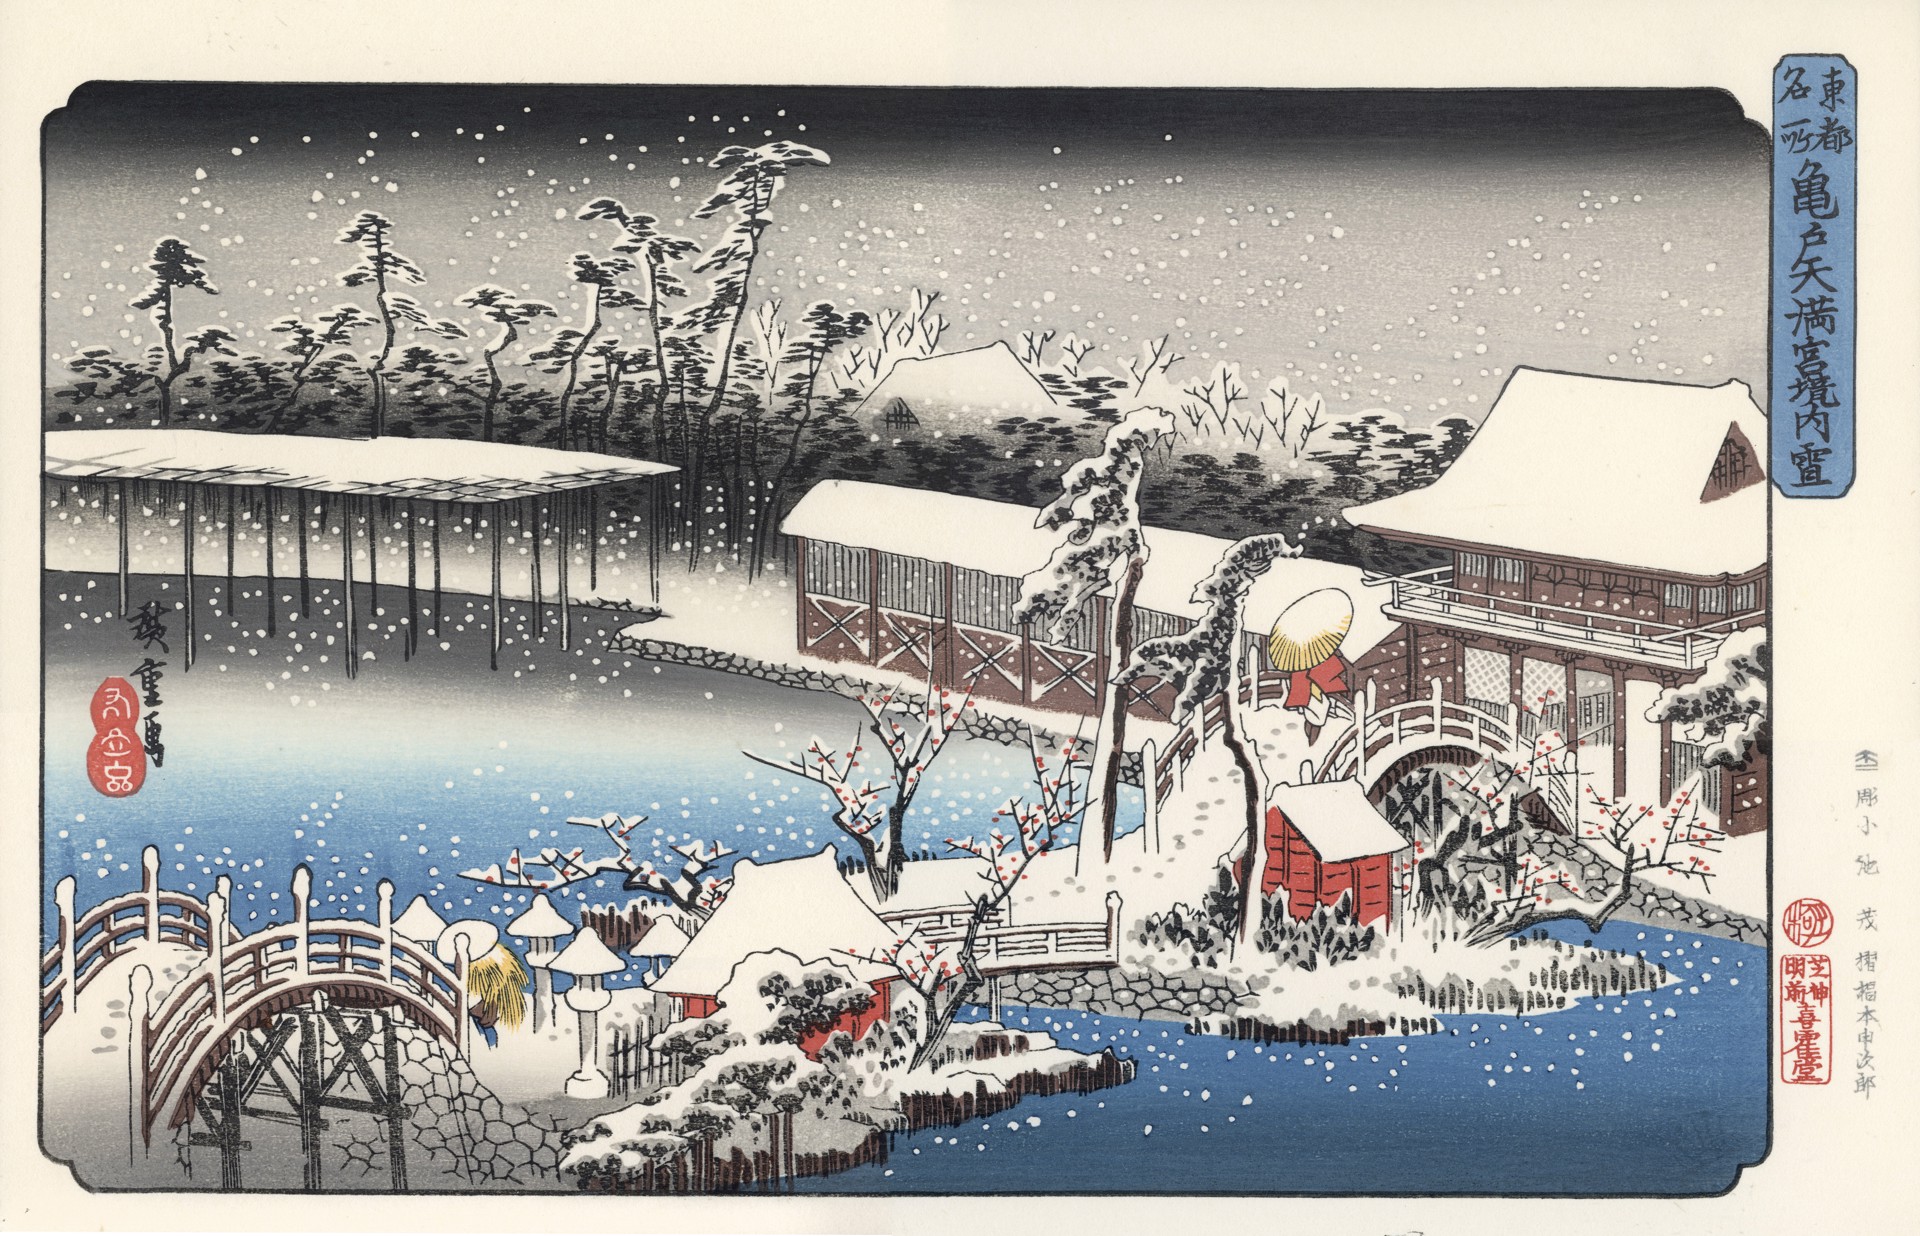 东都名所——⻳户天满宫境内雪 by 歌川⼴重 Utagawa Hiroshige